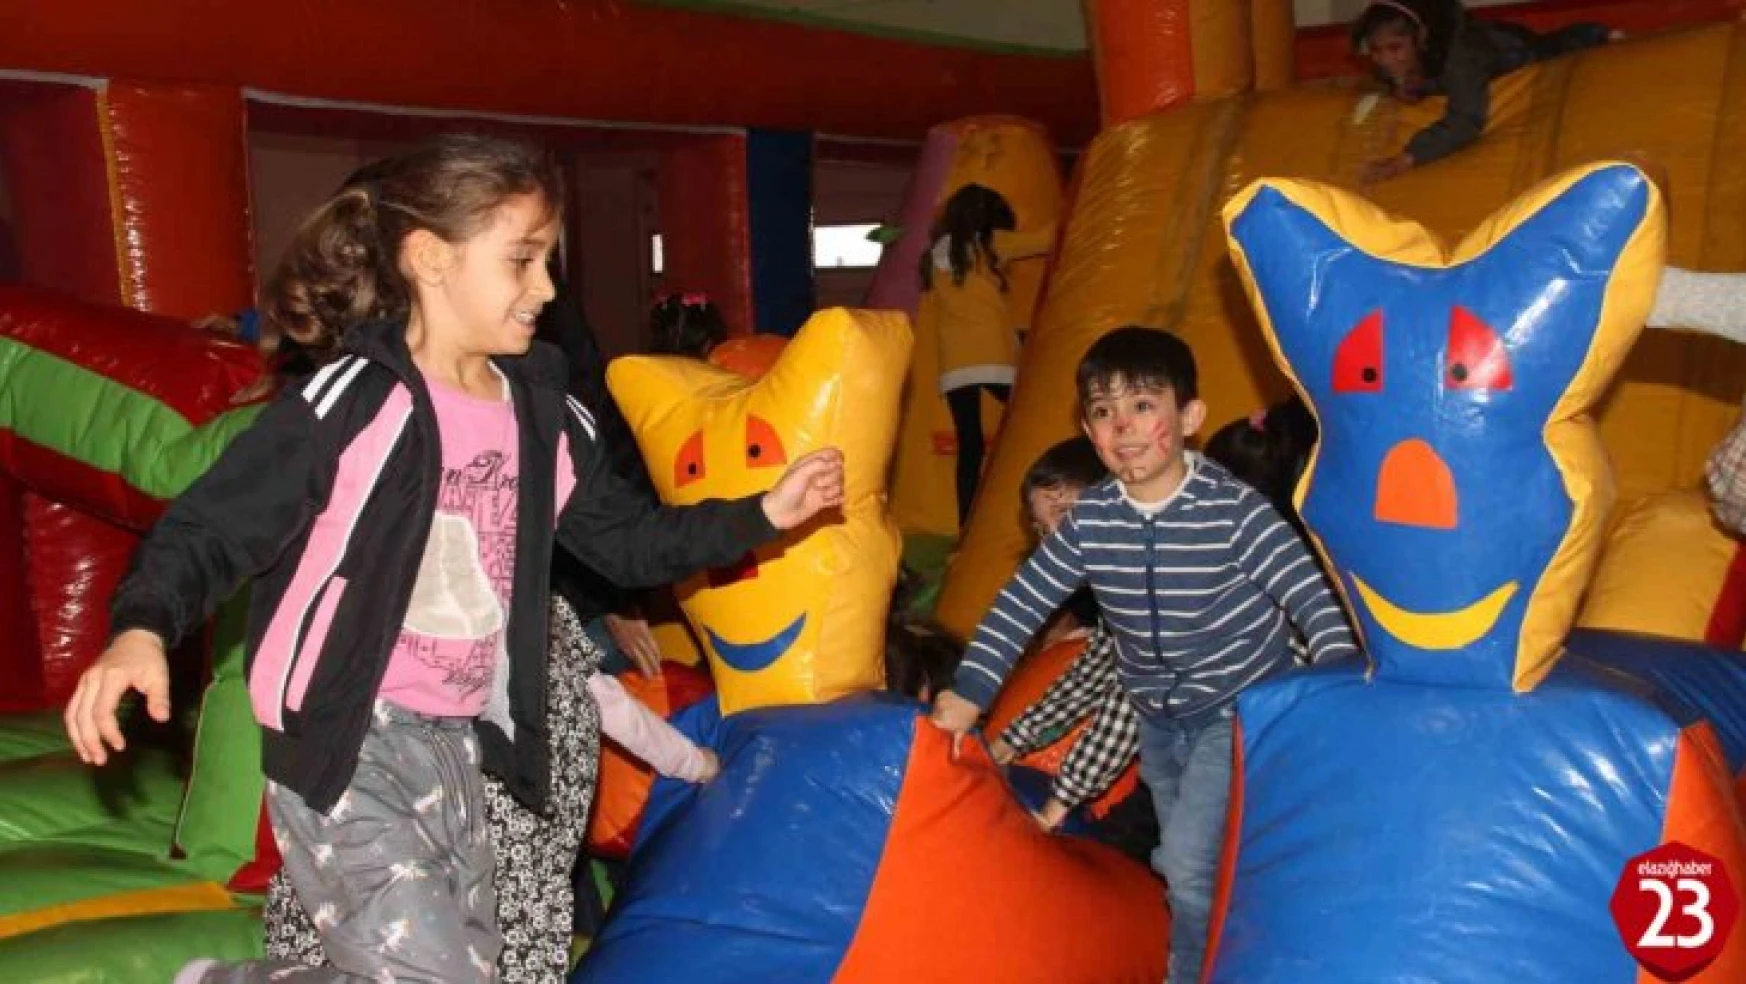 Elazığ'da düzenlenen festivalde çocuklar doyasıya eğlendi